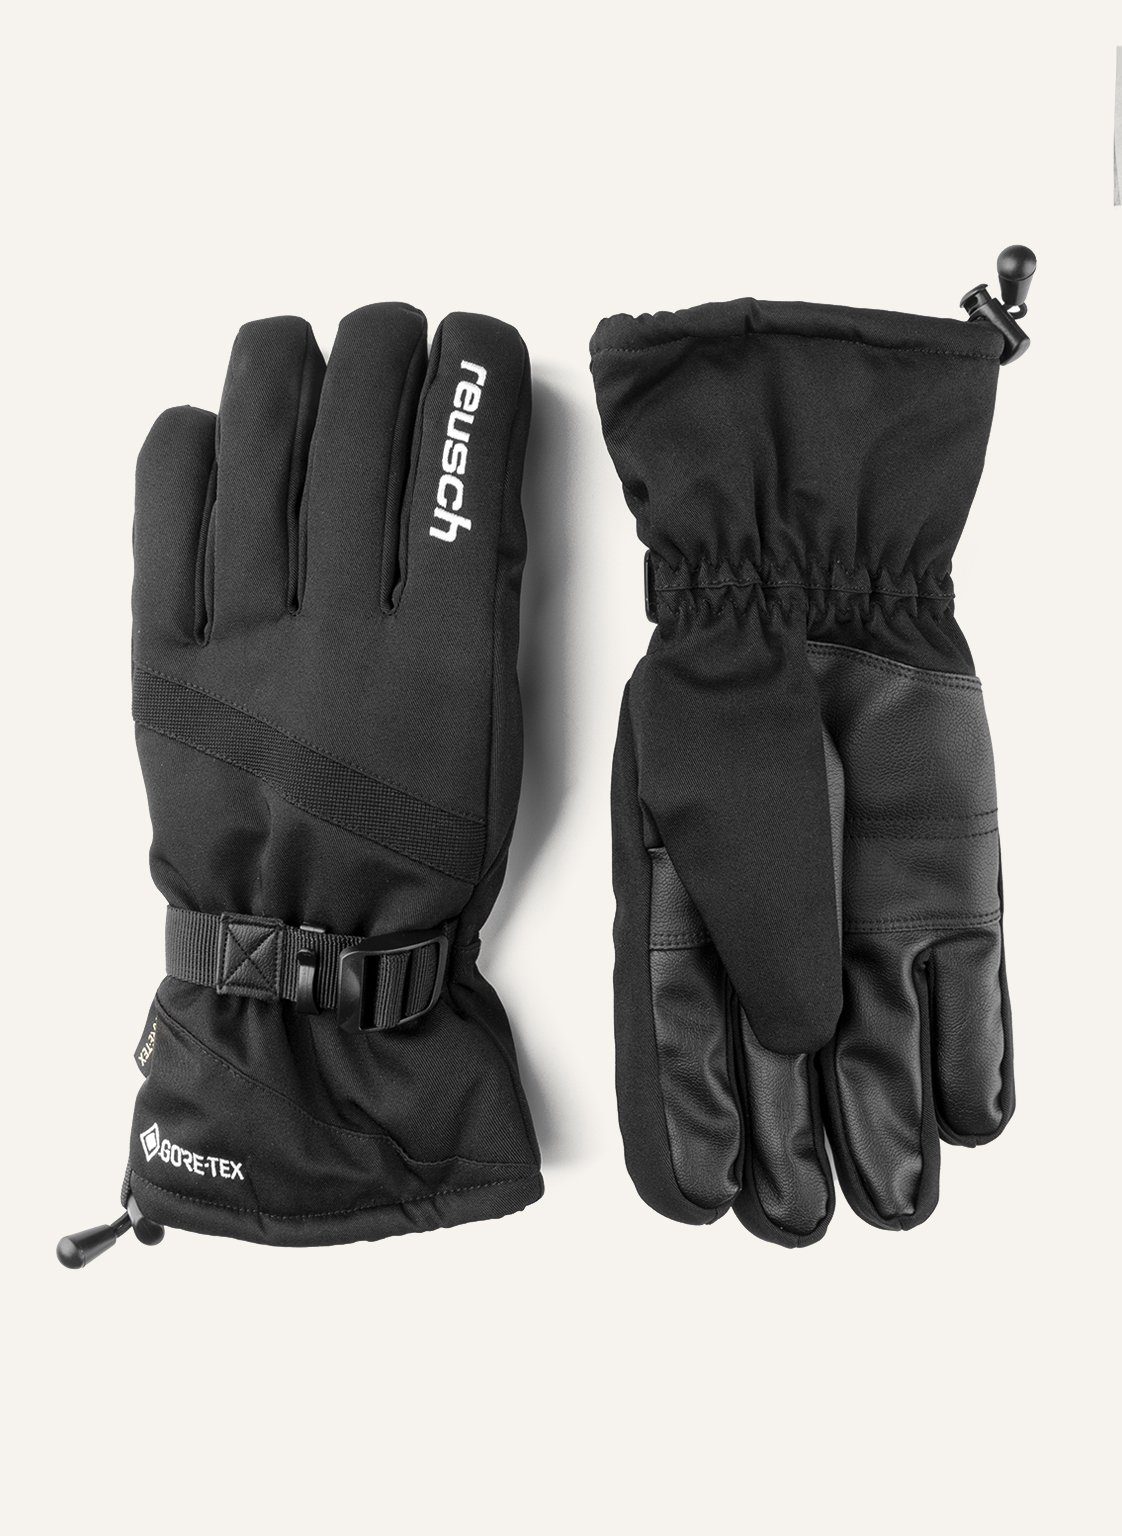 aus wasserdichtem Warm Glove Skihandschuhe atmungsaktivem Material Reusch Winter GORE-TEX und